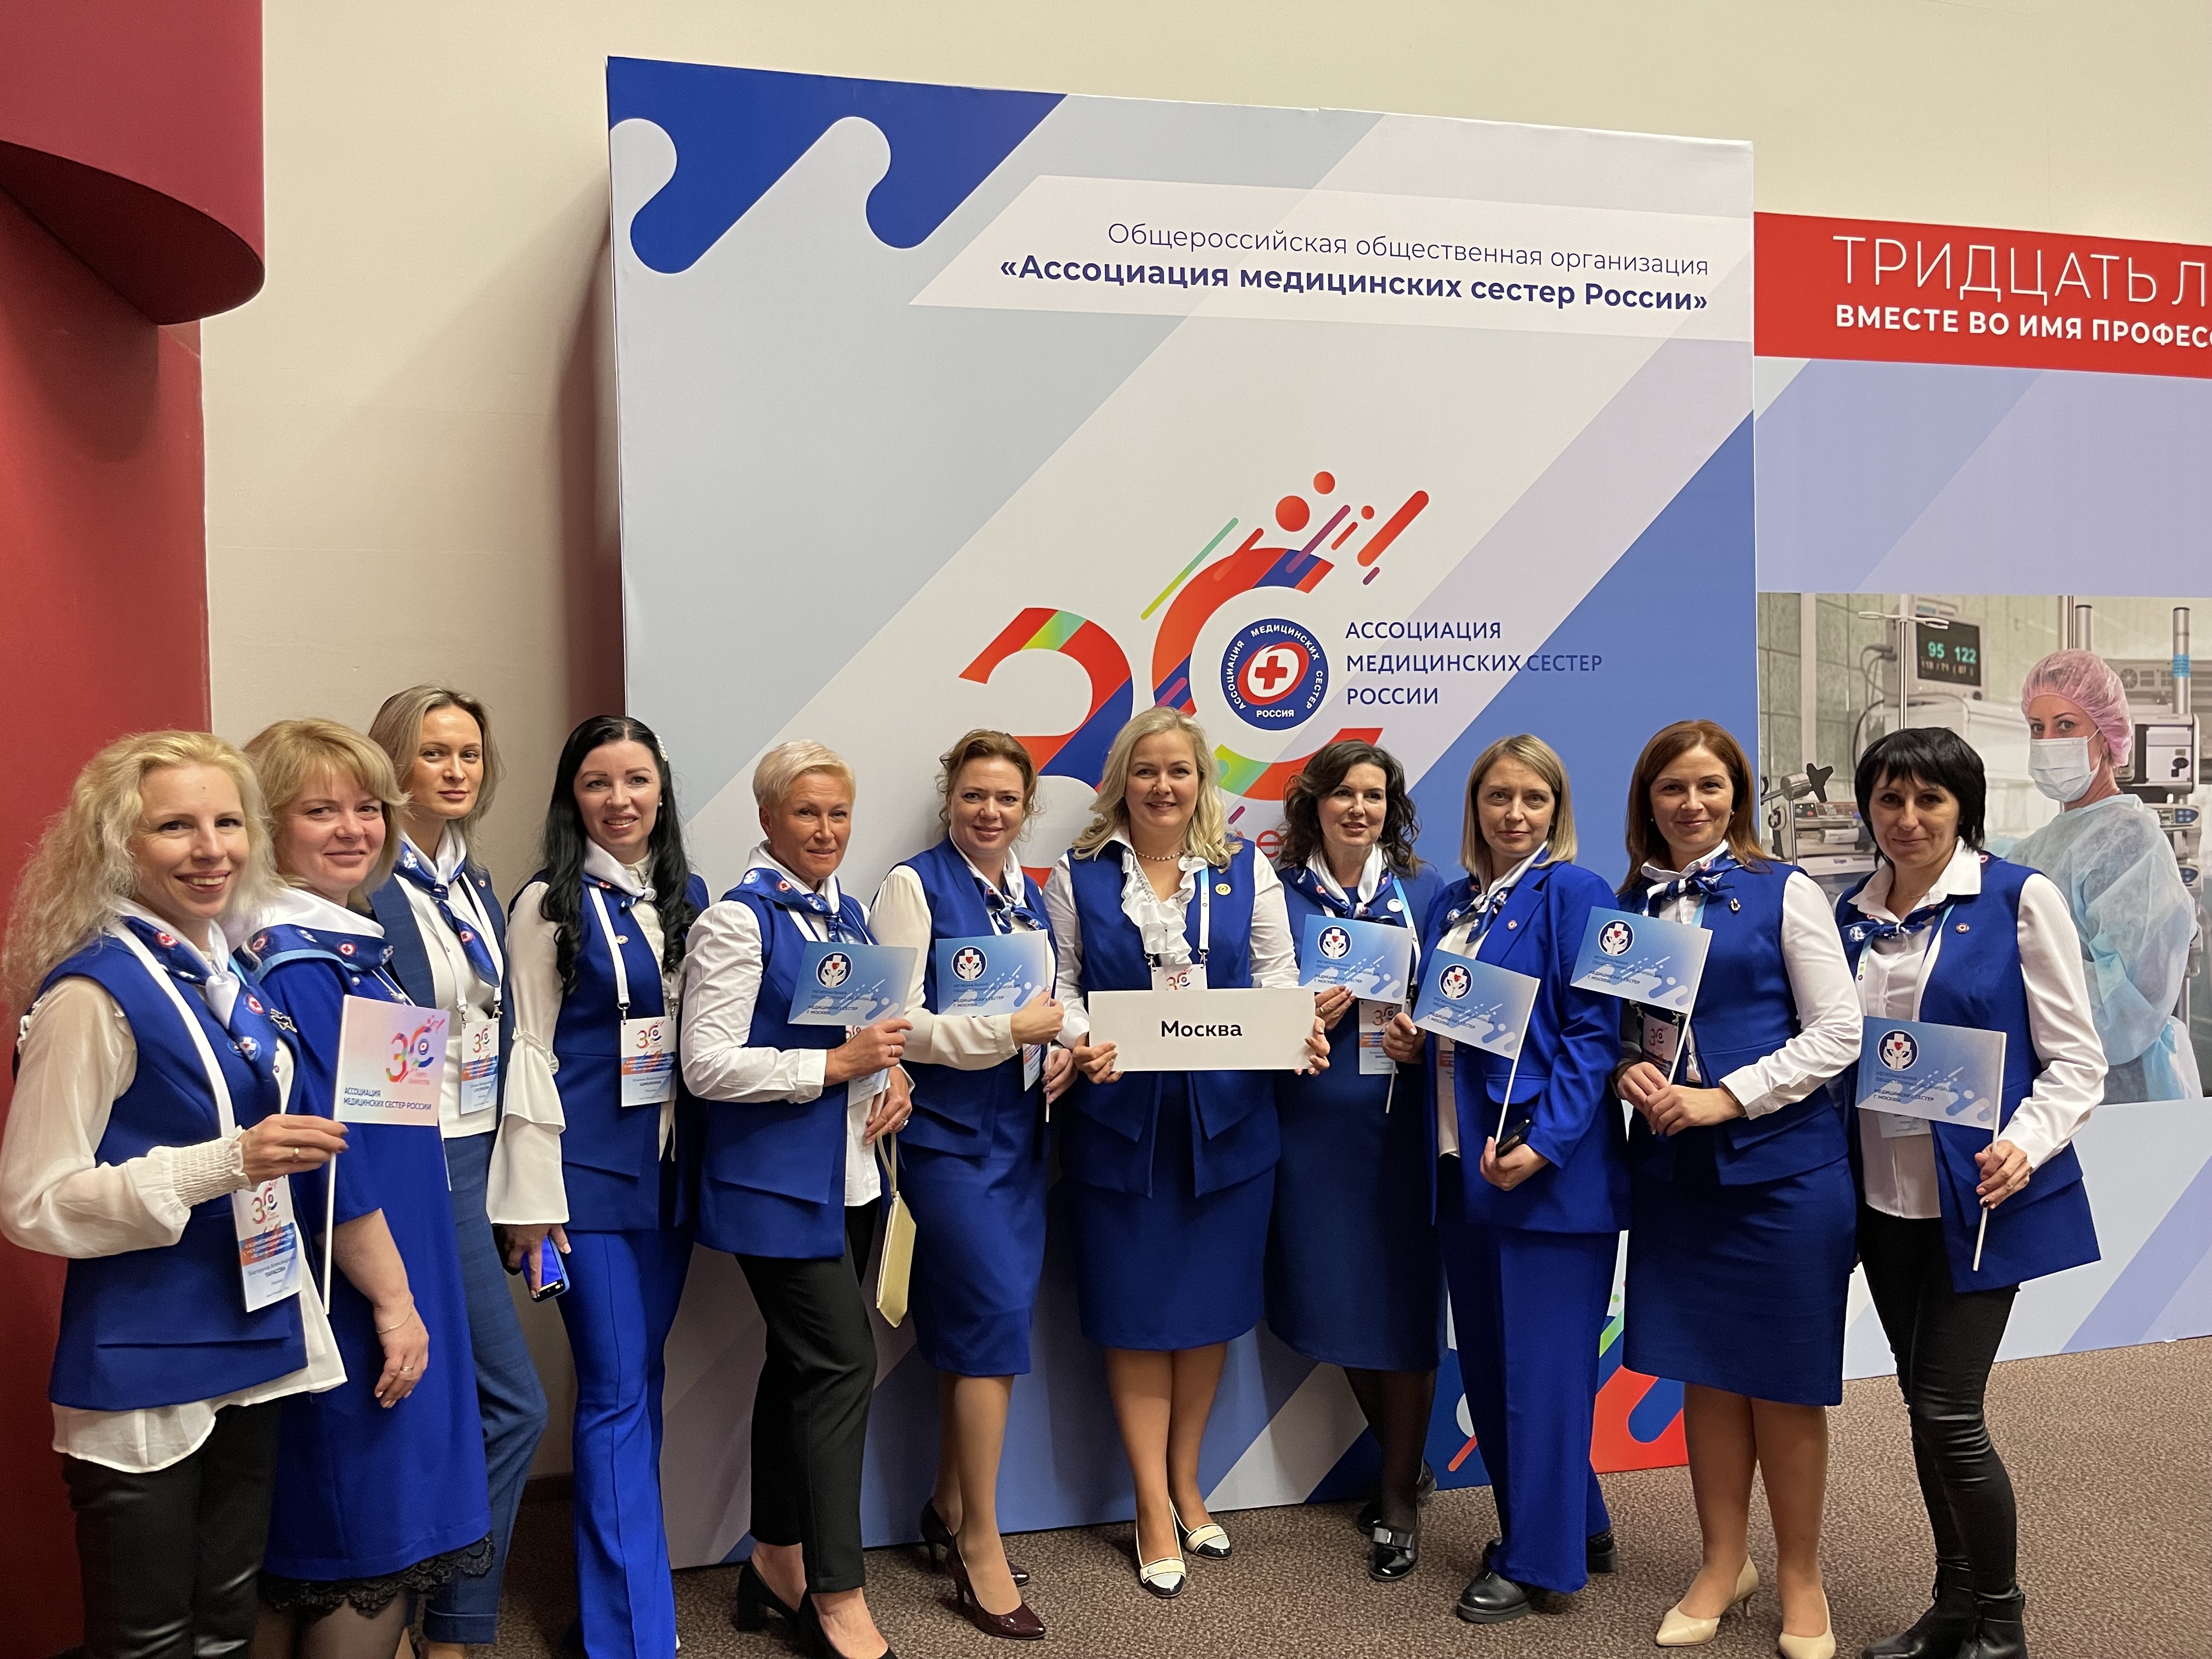 Московская делегация приняла участие в Конгрессе "Тридцать лет вместе во имя профессии"